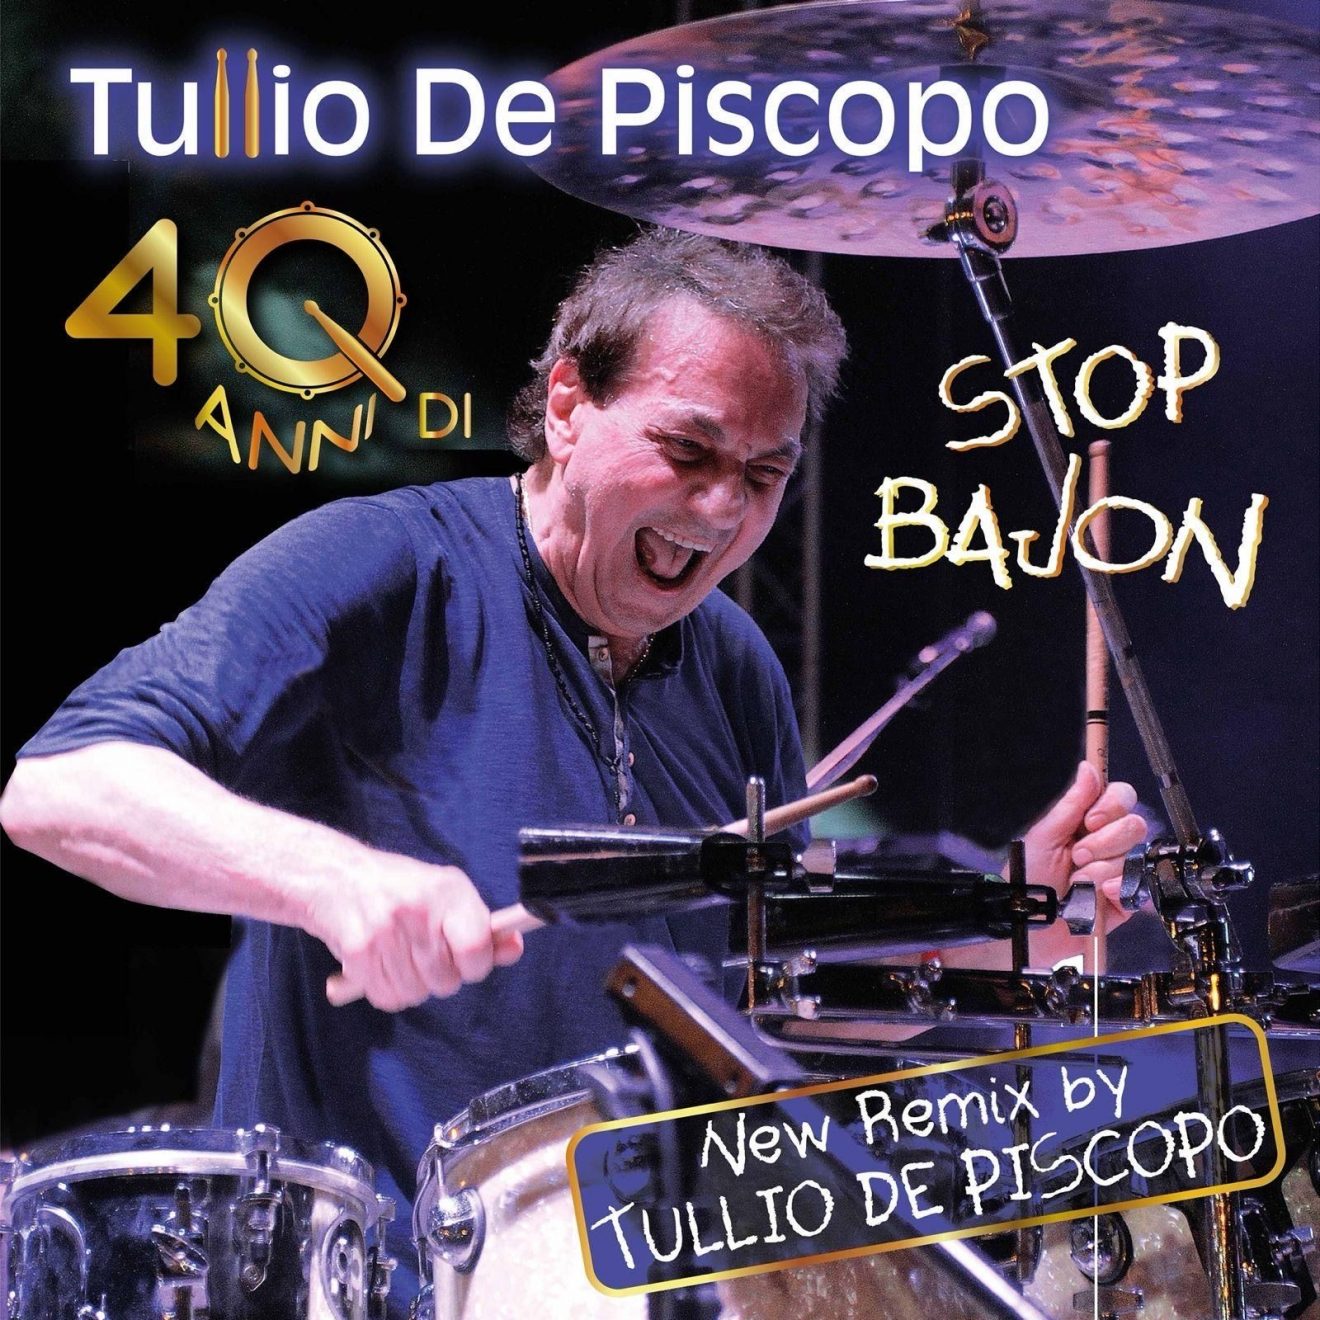 TULLIO DE PISCOPO STOP BAJON NEW REMIX (remixed by Tullio De Piscopo) 40 anni di Stop Bajon